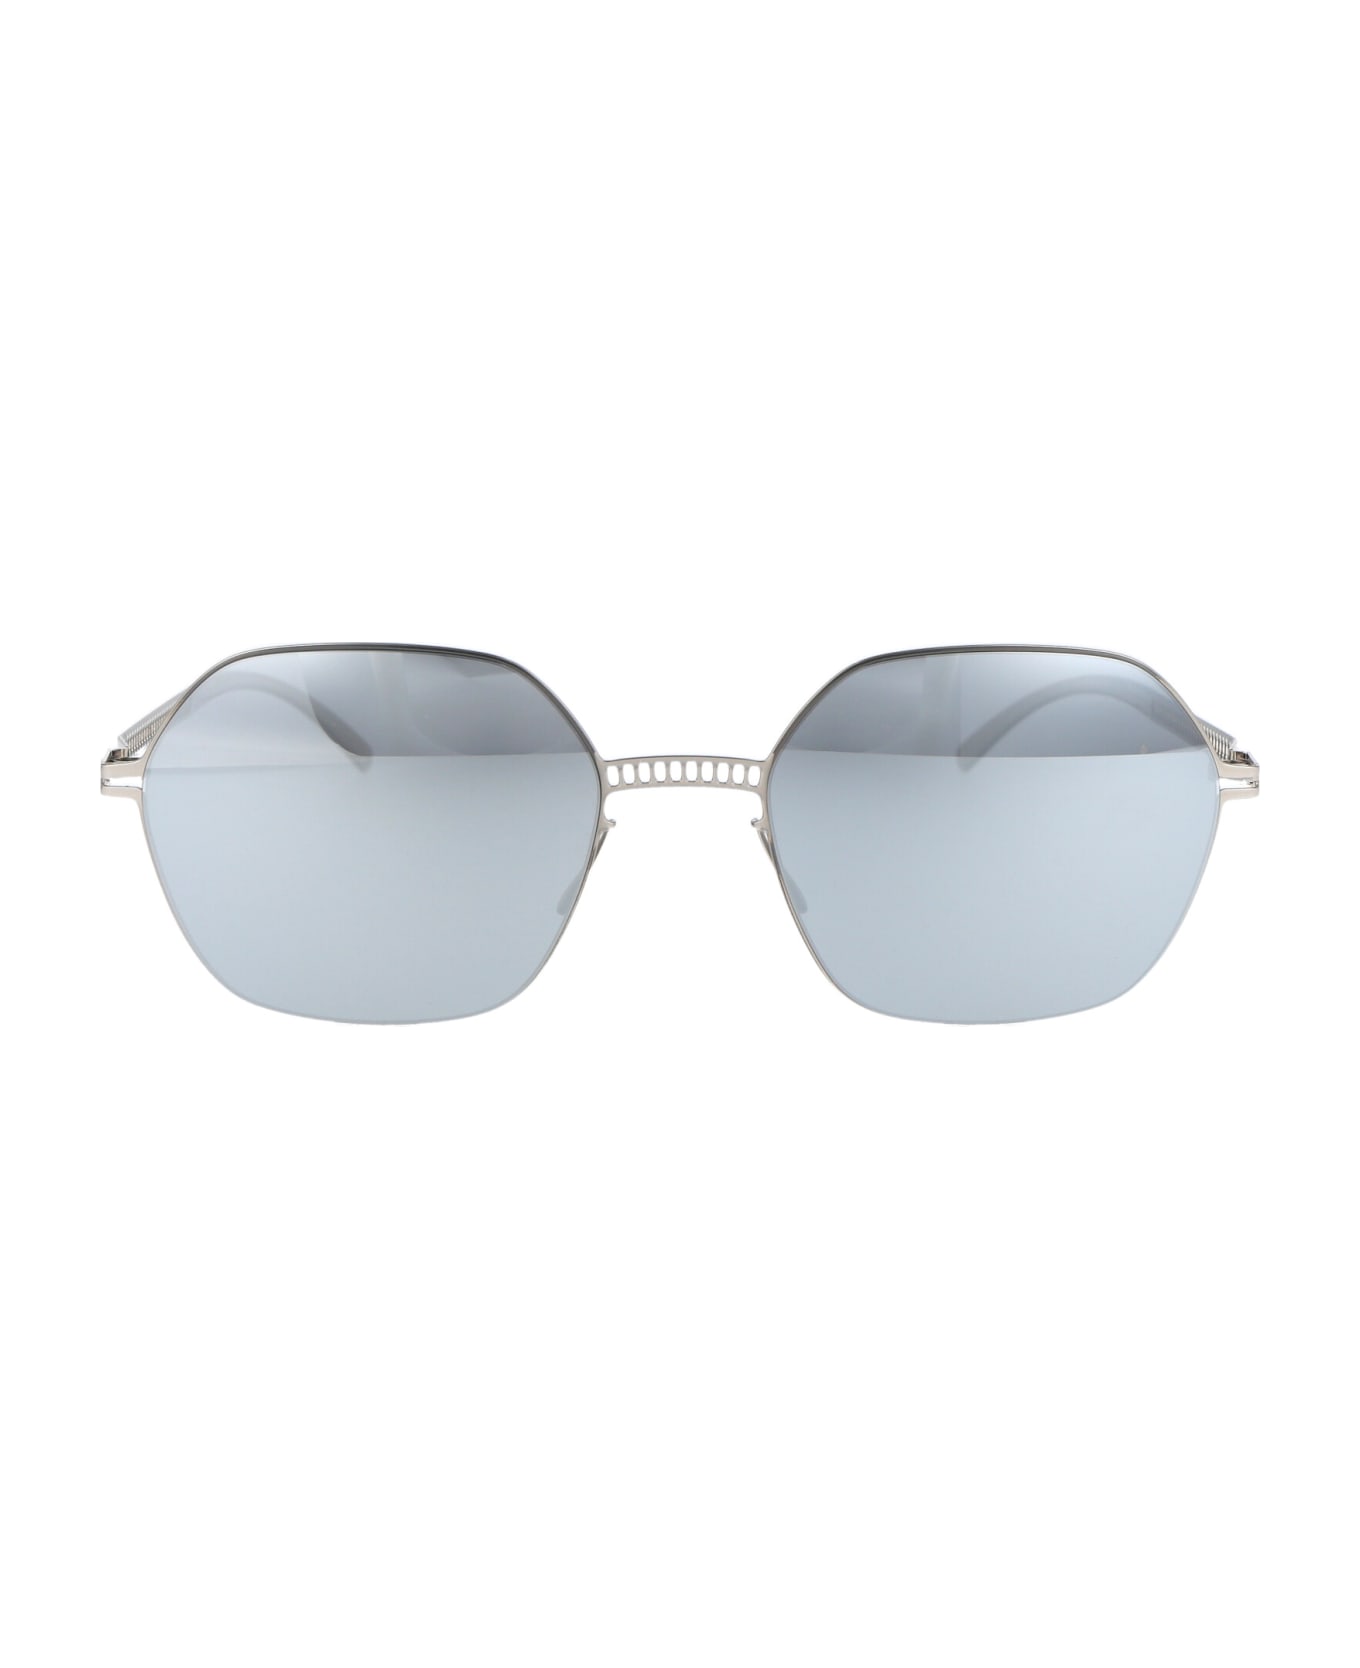 Mykita Mmesse028 Sunglasses - 187 E1 SILVER | SILVER FLASH